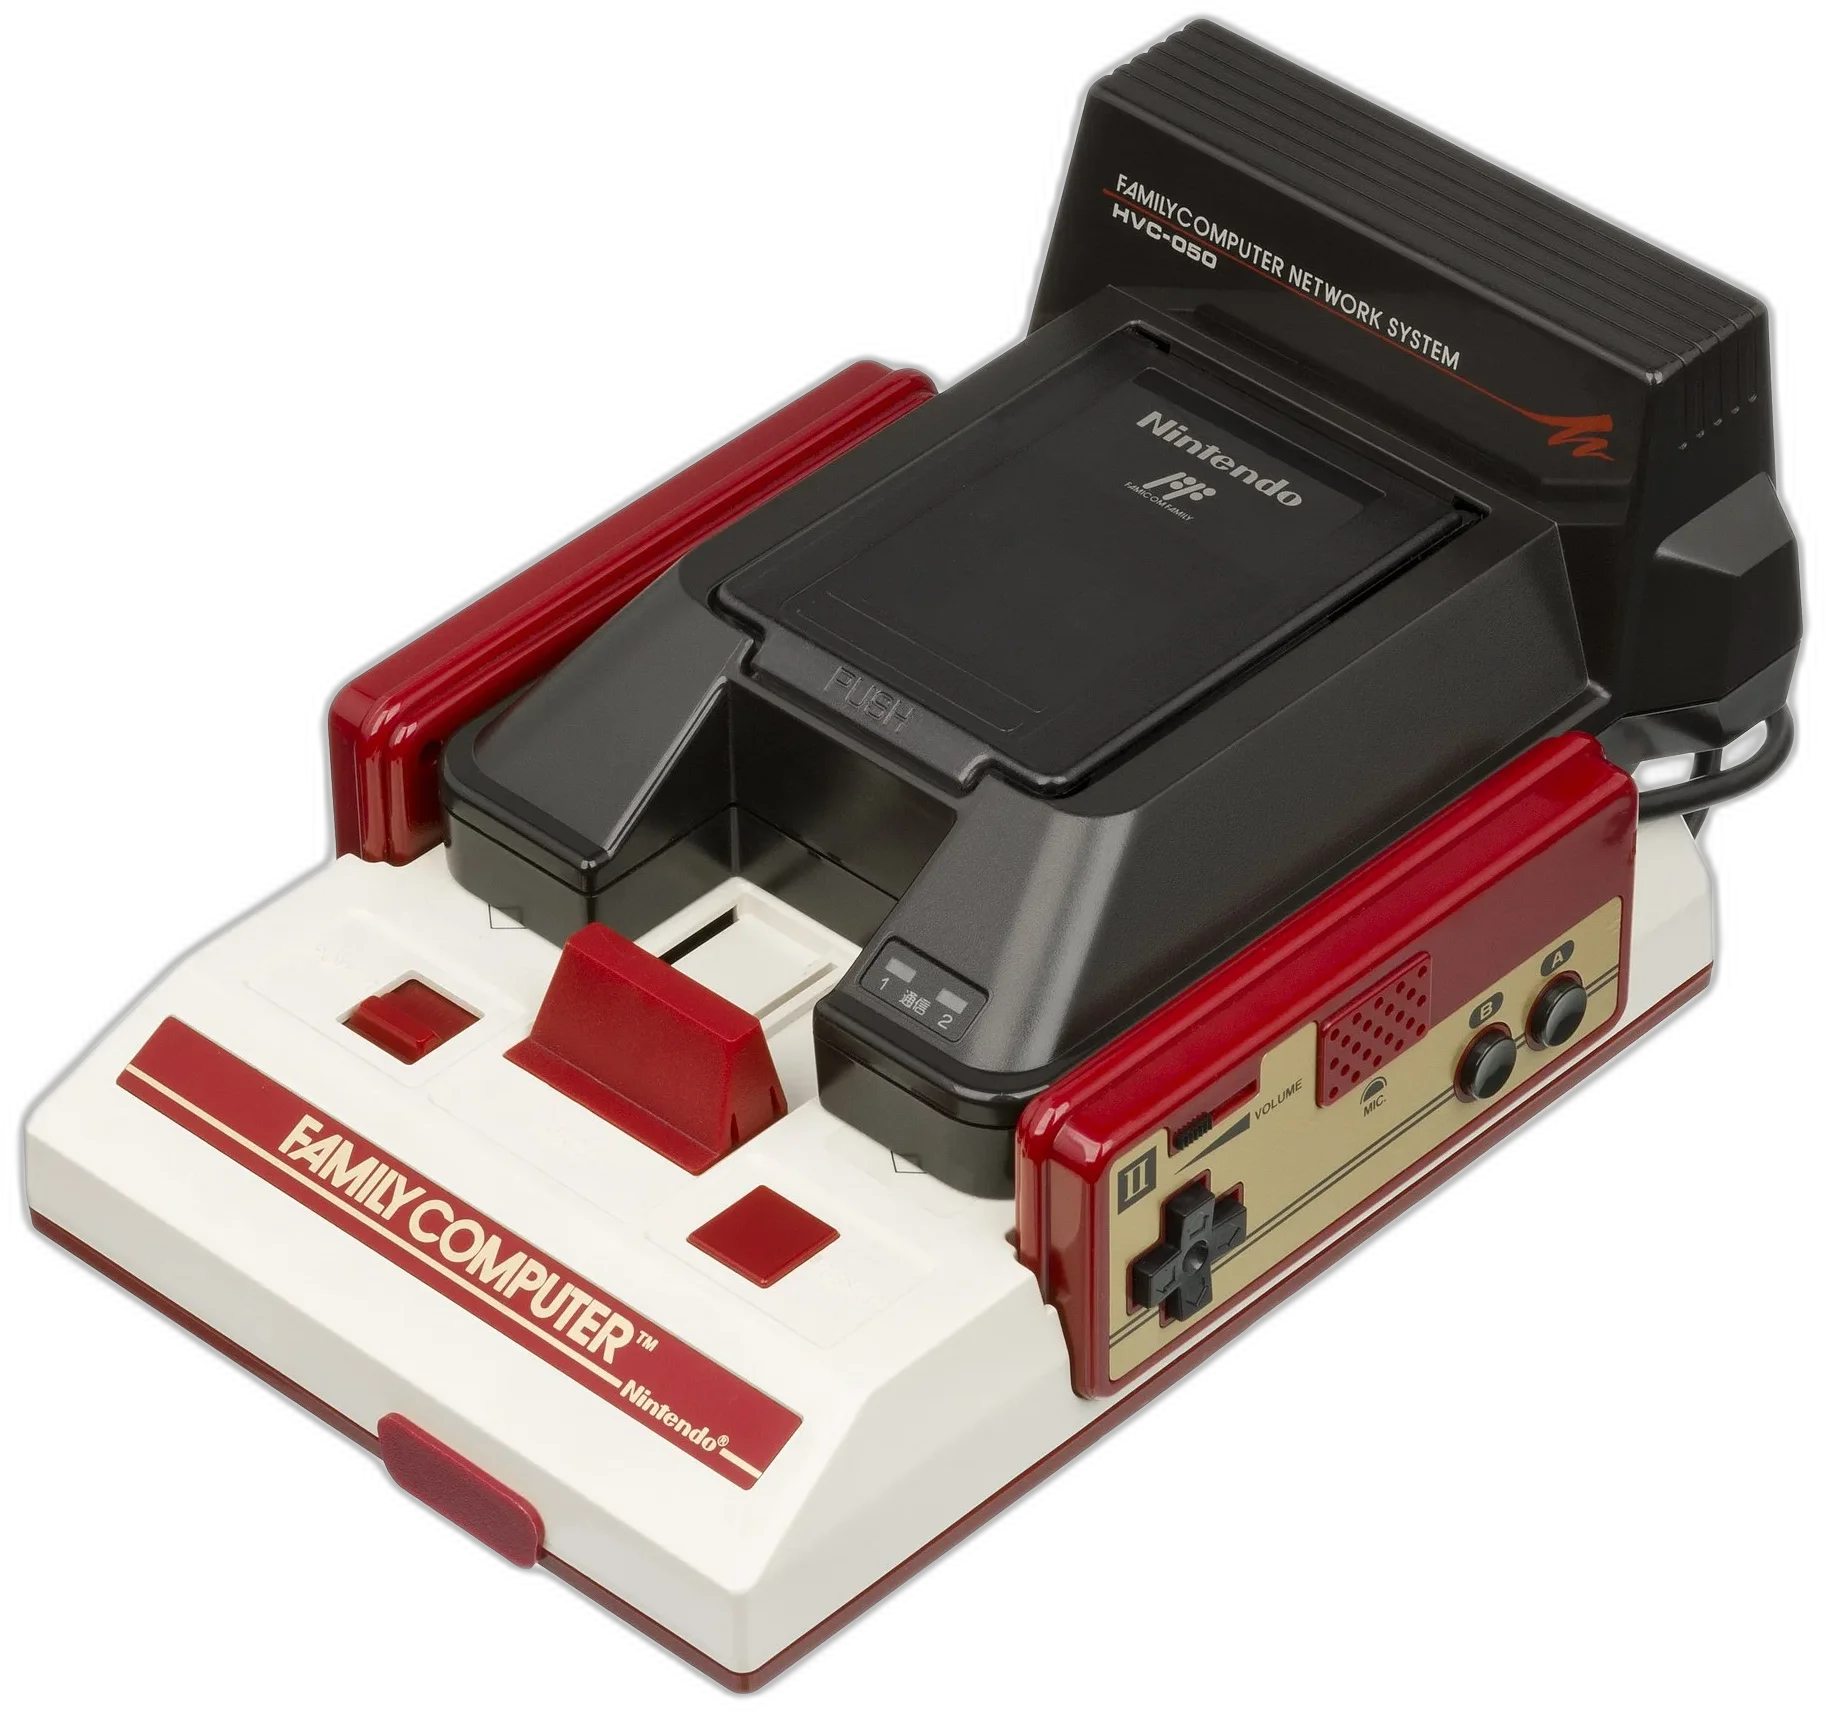  Nintendo Famicom Family Computer Network System